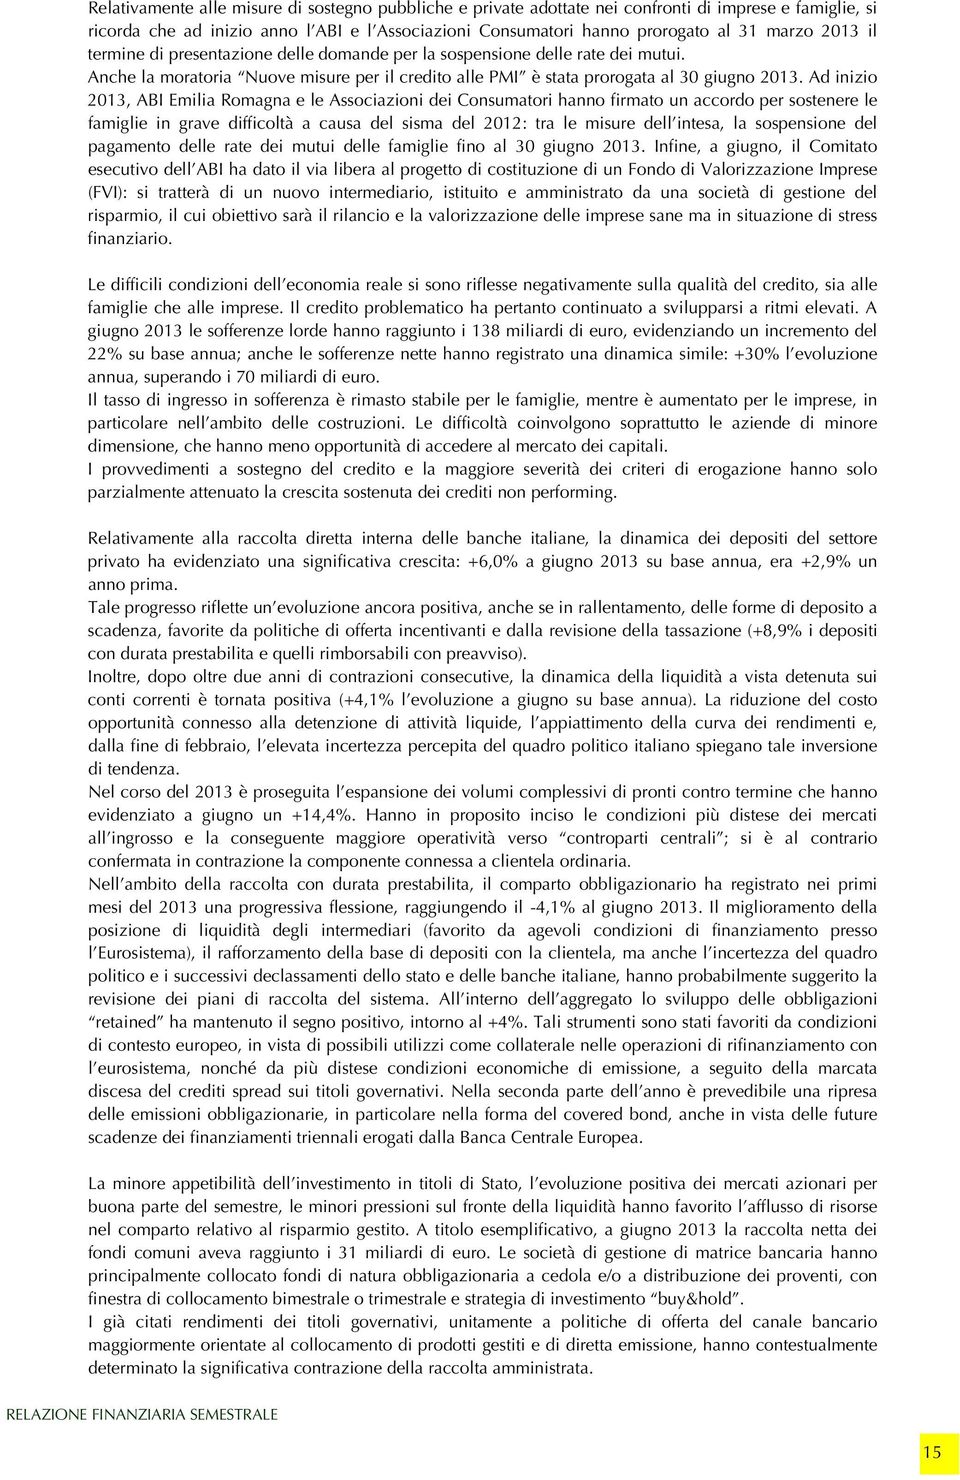 Ad inizio 2013, ABI Emilia Romagna e le Associazioni dei Consumatori hanno firmato un accordo per sostenere le famiglie in grave difficoltà a causa del sisma del 2012: tra le misure dell intesa, la